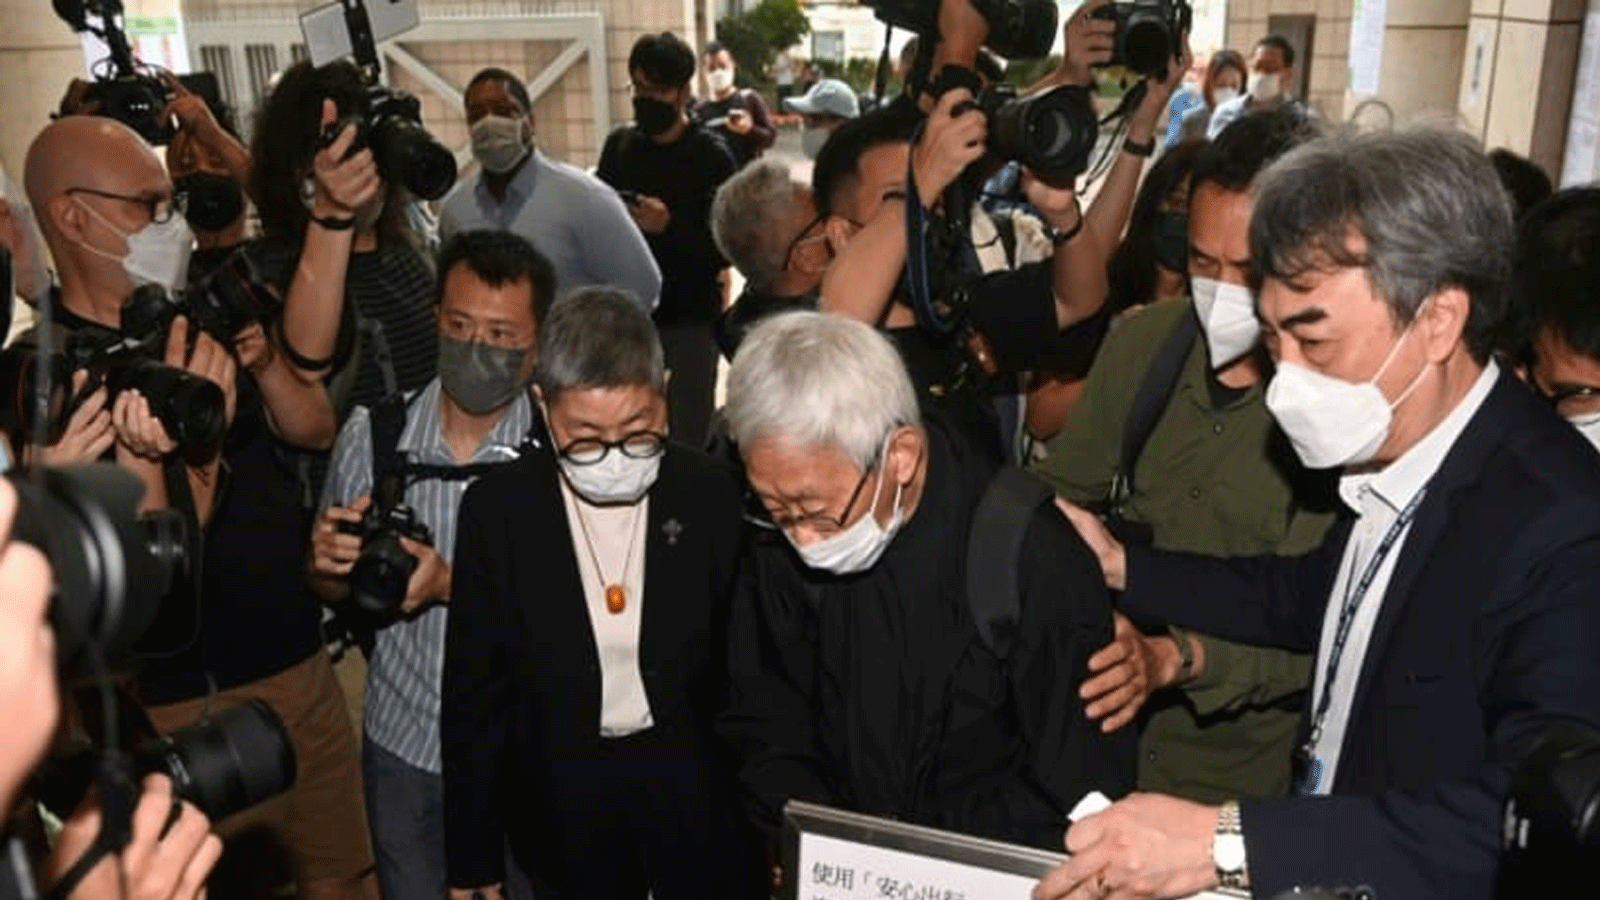 الكاردينال زين (وسط)، أحد كبار رجال الدين الكاثوليك في آسيا، يصل إلى المحكمة مع الناشطة المؤيدة للديمقراطية والمحامية مارغريت نج (يسار الوسط) في هونغ كونغ في 24 أيار\مايو 2022 بعد أن تم القبض عليهم بتهمة 